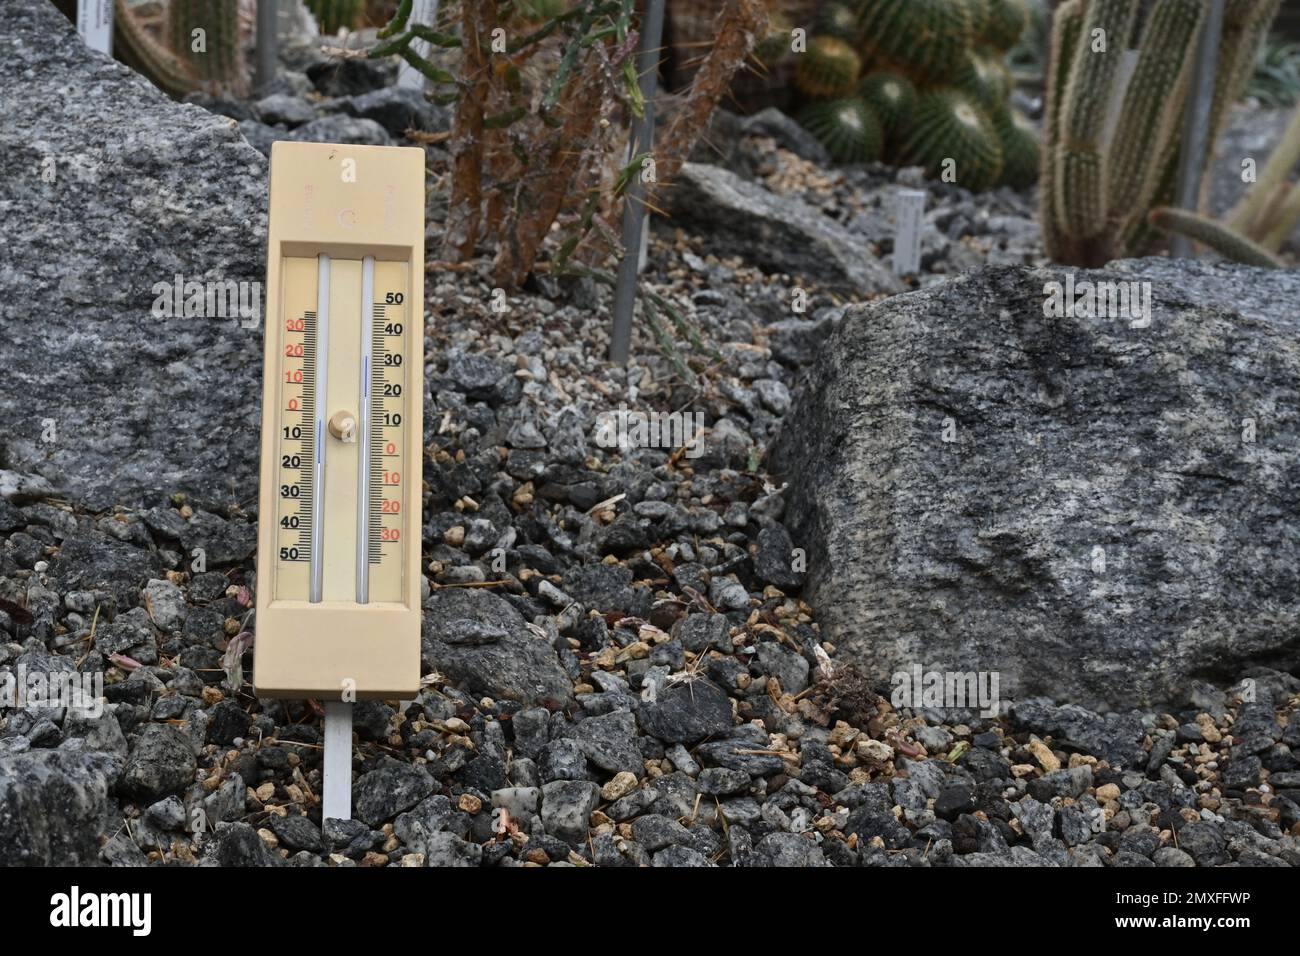 Termometro a bulbo umido e secco, uno strumento utilizzato per misurare l'umidità relativa dell'atmosfera. Foto Stock